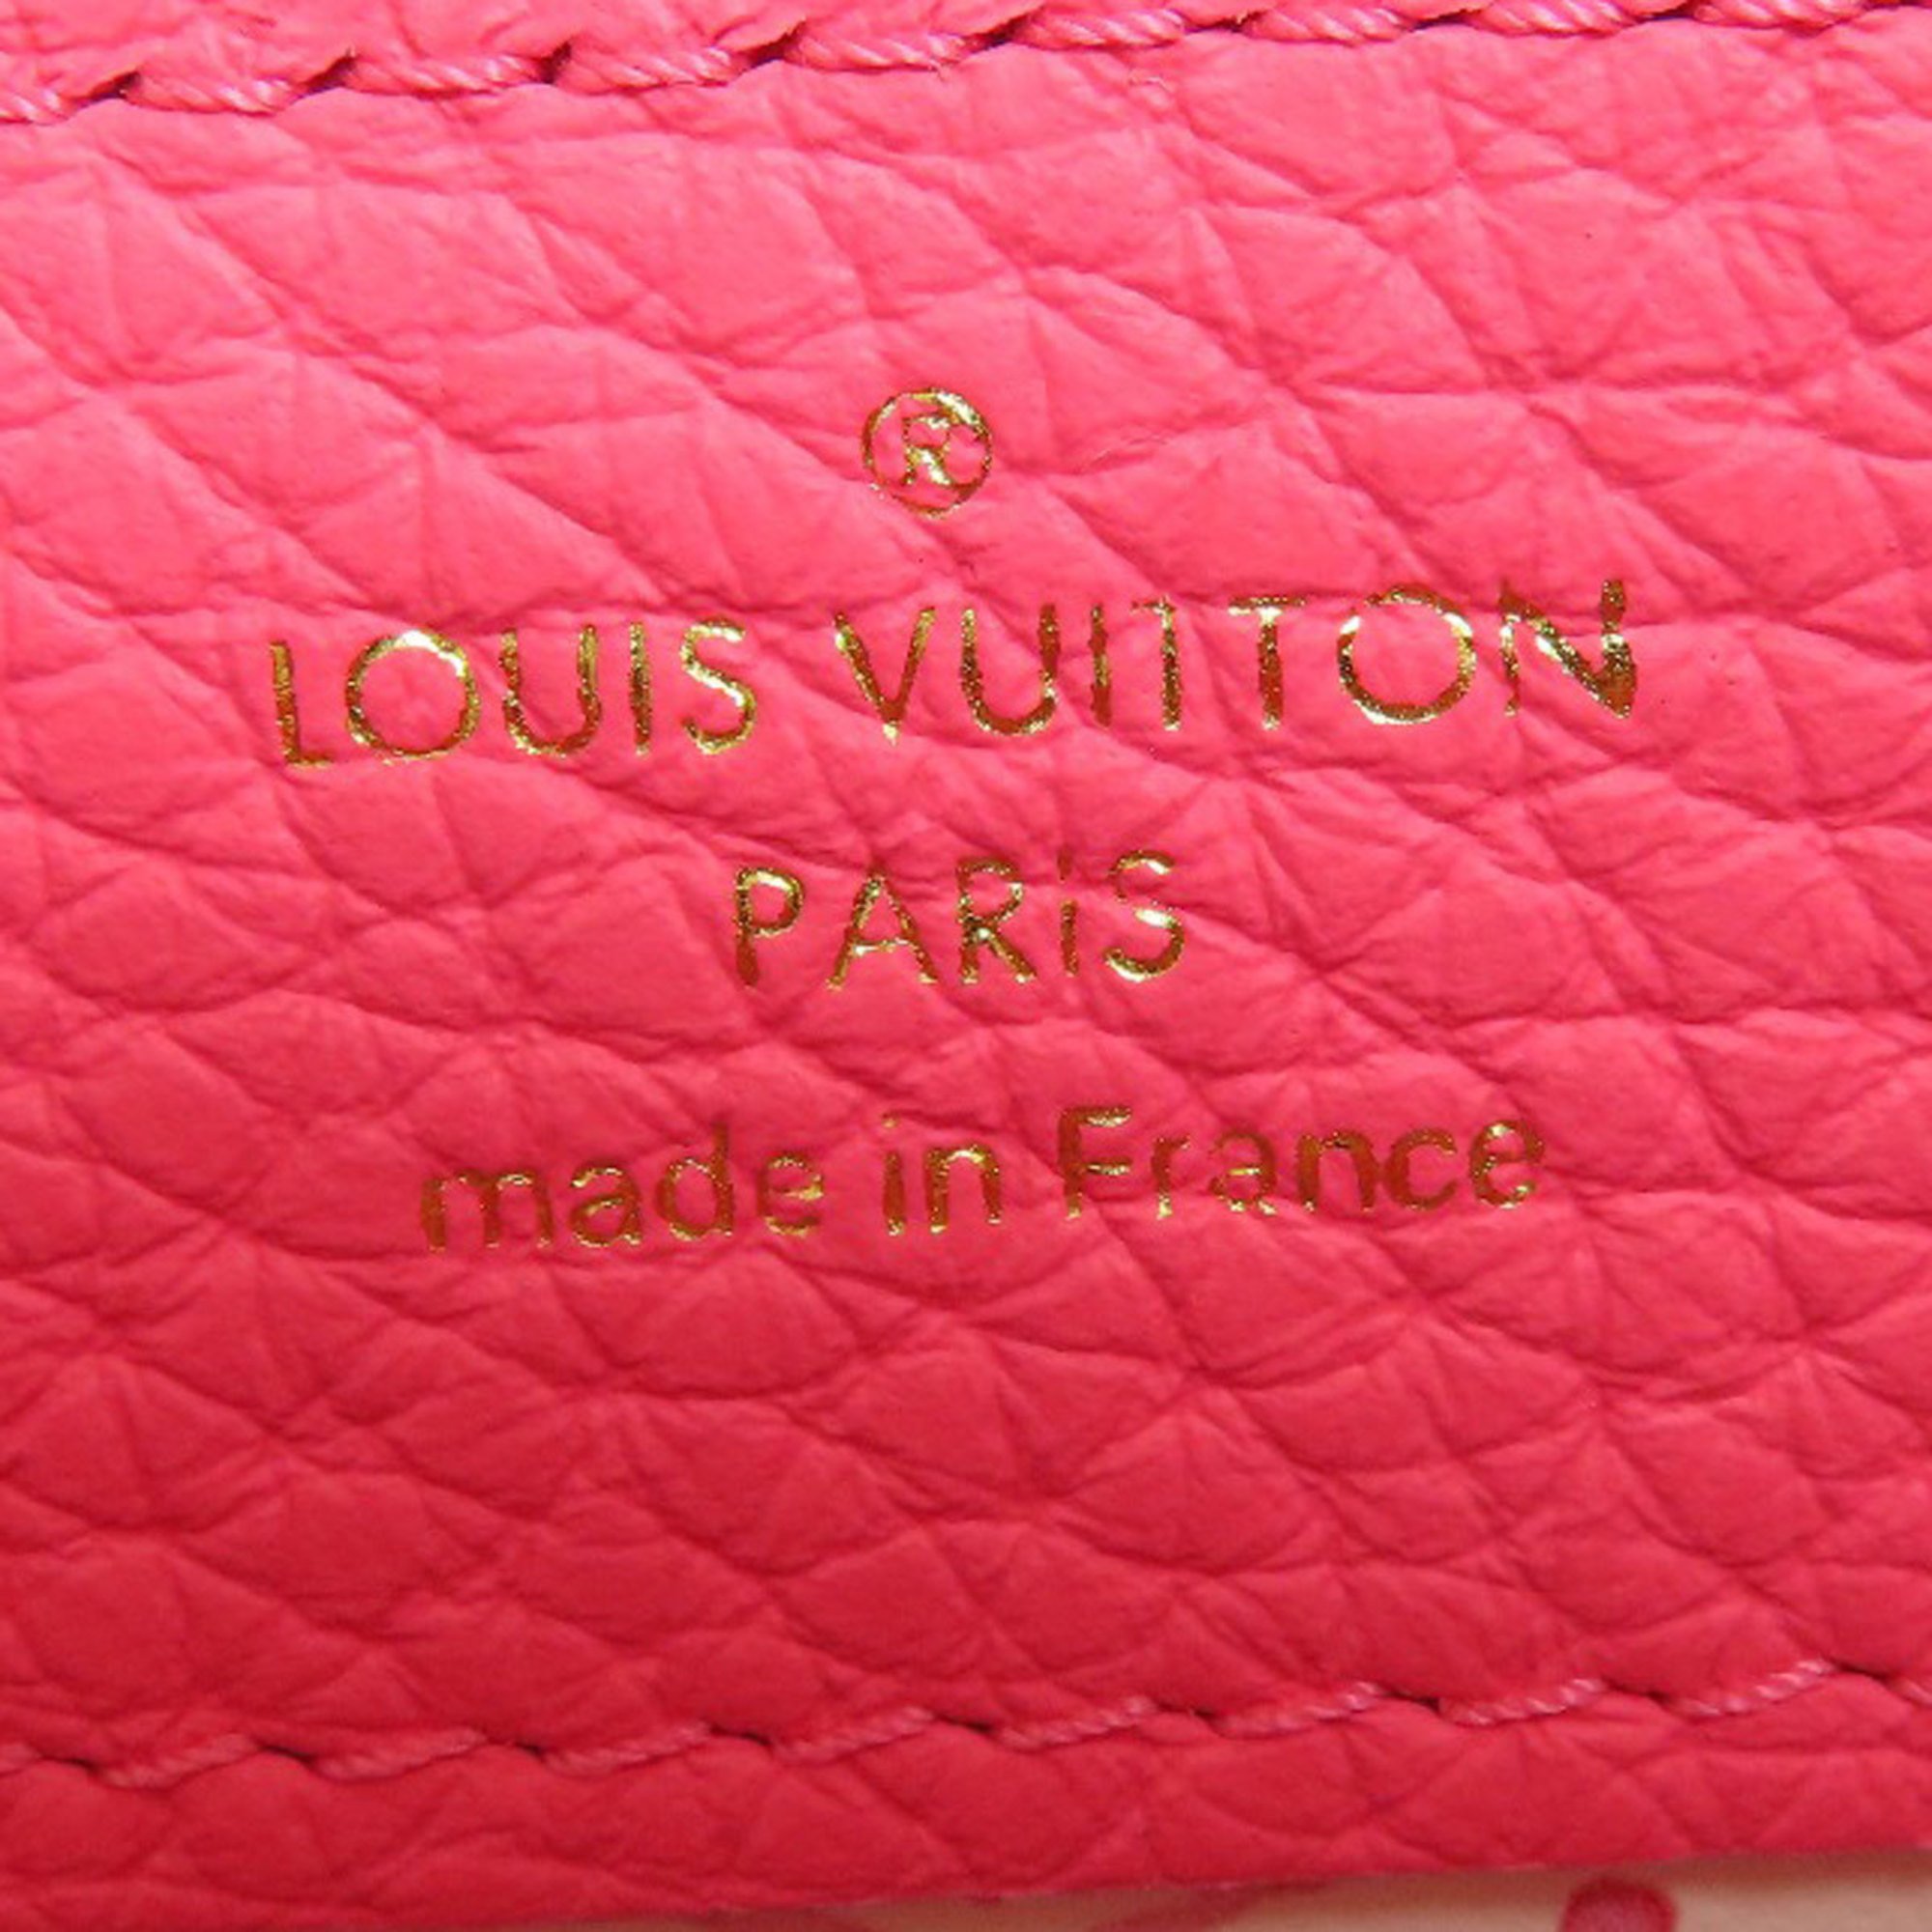 Louis Vuitton M22796 Capucines MINI Handbag Taurillon Leather Women's